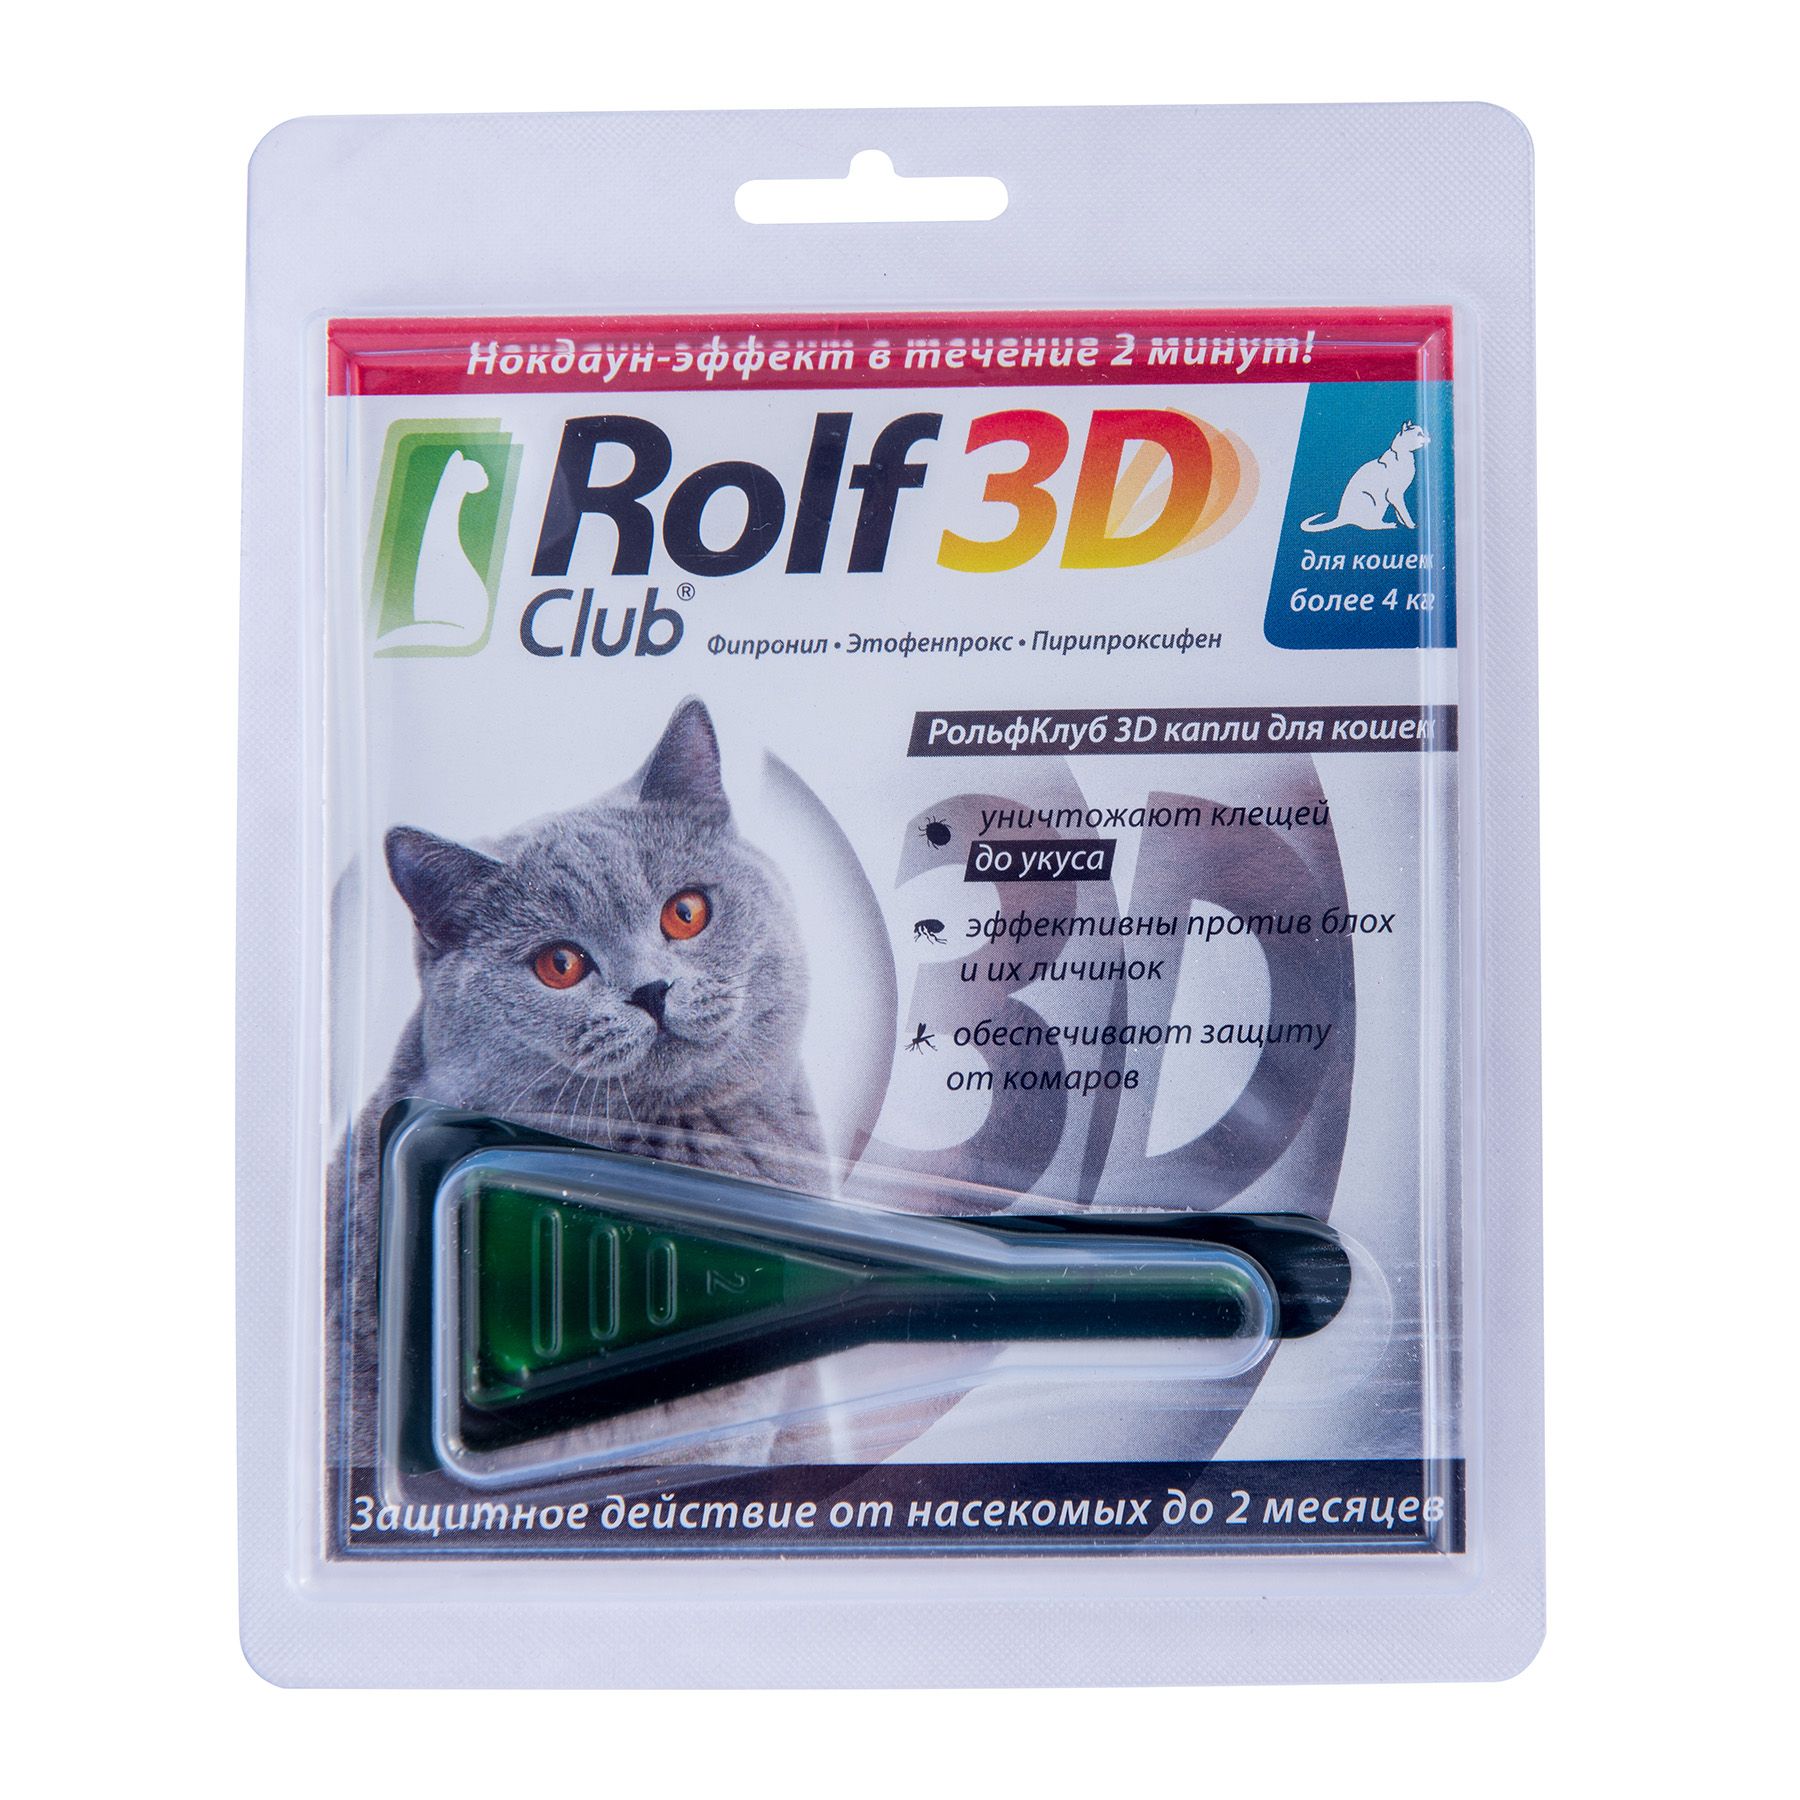 Rolf club 3d капли от клещей. РОЛЬФ 3д капли для кошек. РОЛЬФ 3д капли для кошек от блох. Rolf 3d капли для кошек до 4 кг. Капли от блох, клещей Rolf 3d Club.